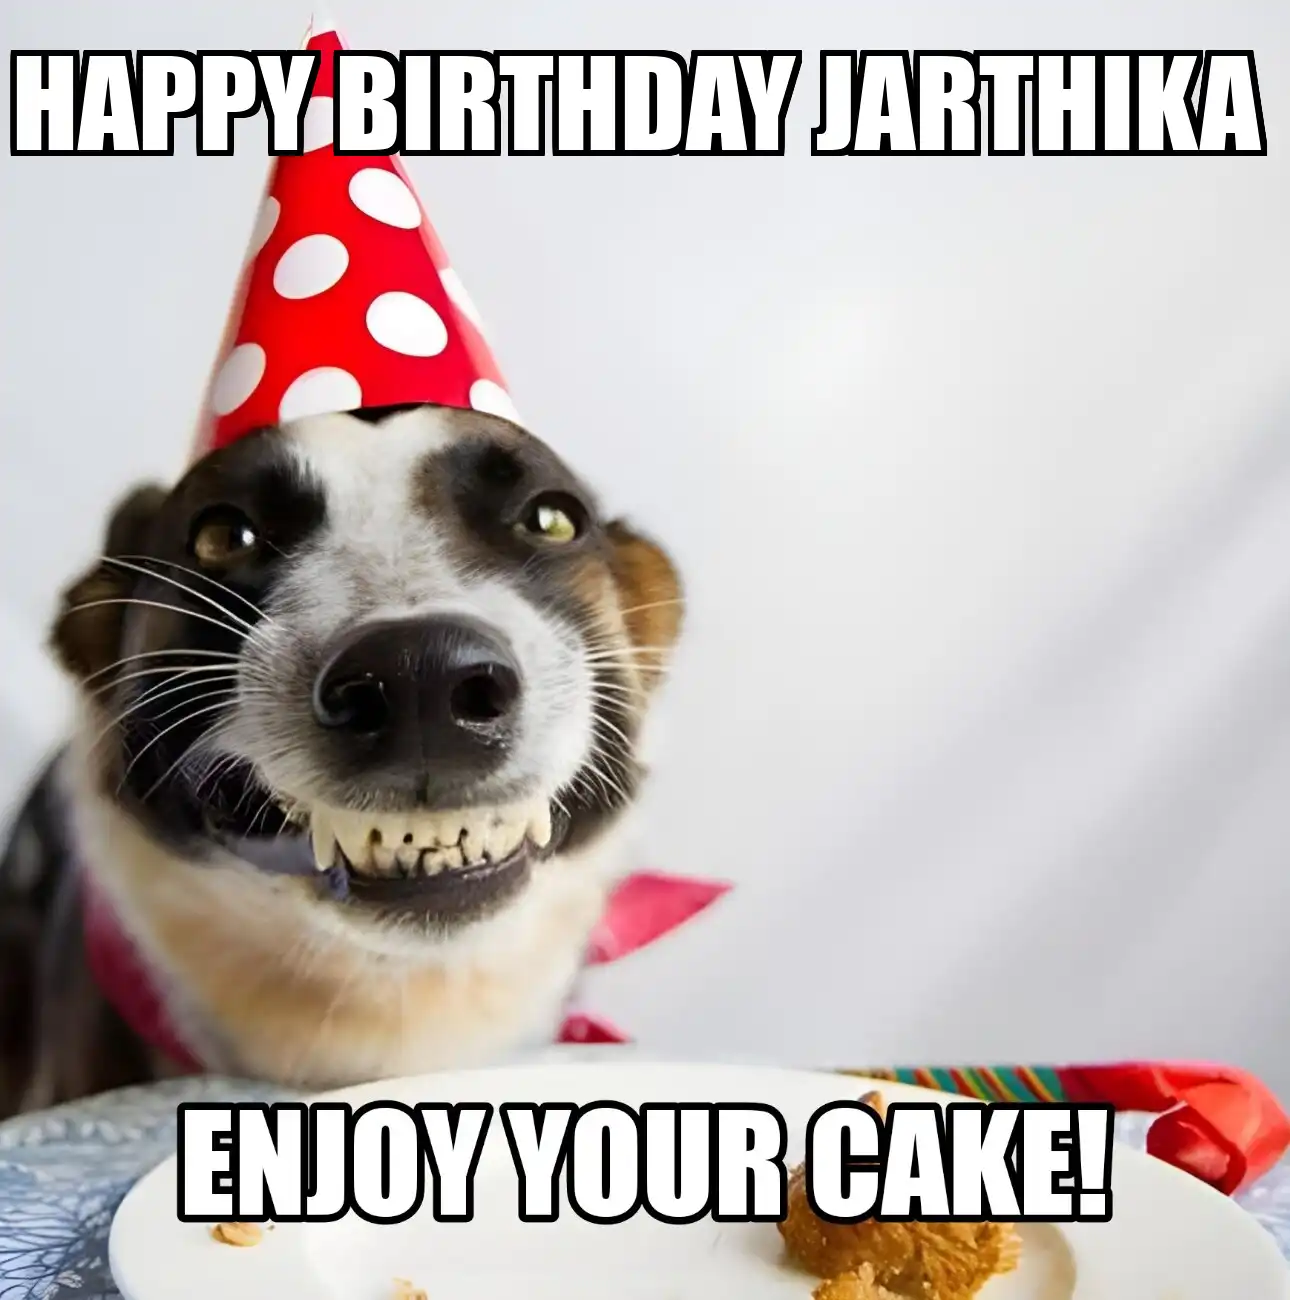 Happy Birthday Jarthika Enjoy Your Cake Dog Meme